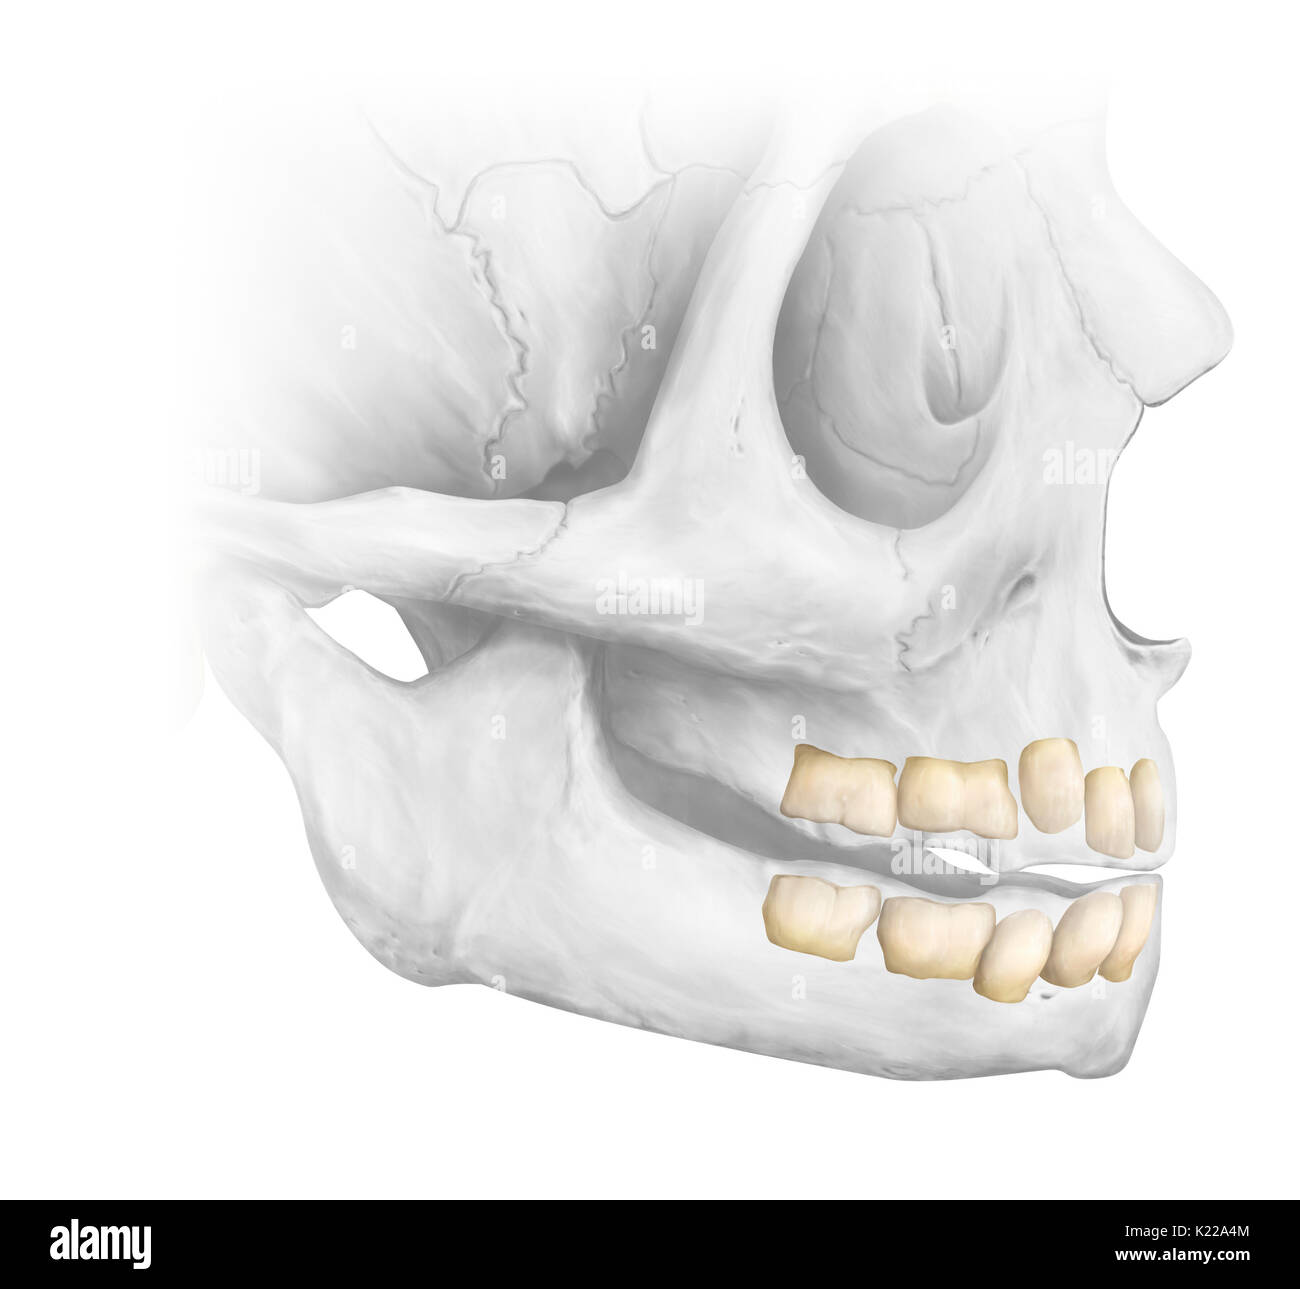 Jusqu'à environ l'âge de 6 ans, la dentition a 20 dents temporaires. L'ensemble de la dentition adulte a 32 dents : 8 incisives, 4 canines, 8 prémolaires et 12 molaires. Les dernières molaires, appelé les dents de sagesse, sont parfois absentes ou mal positionnées. Banque D'Images